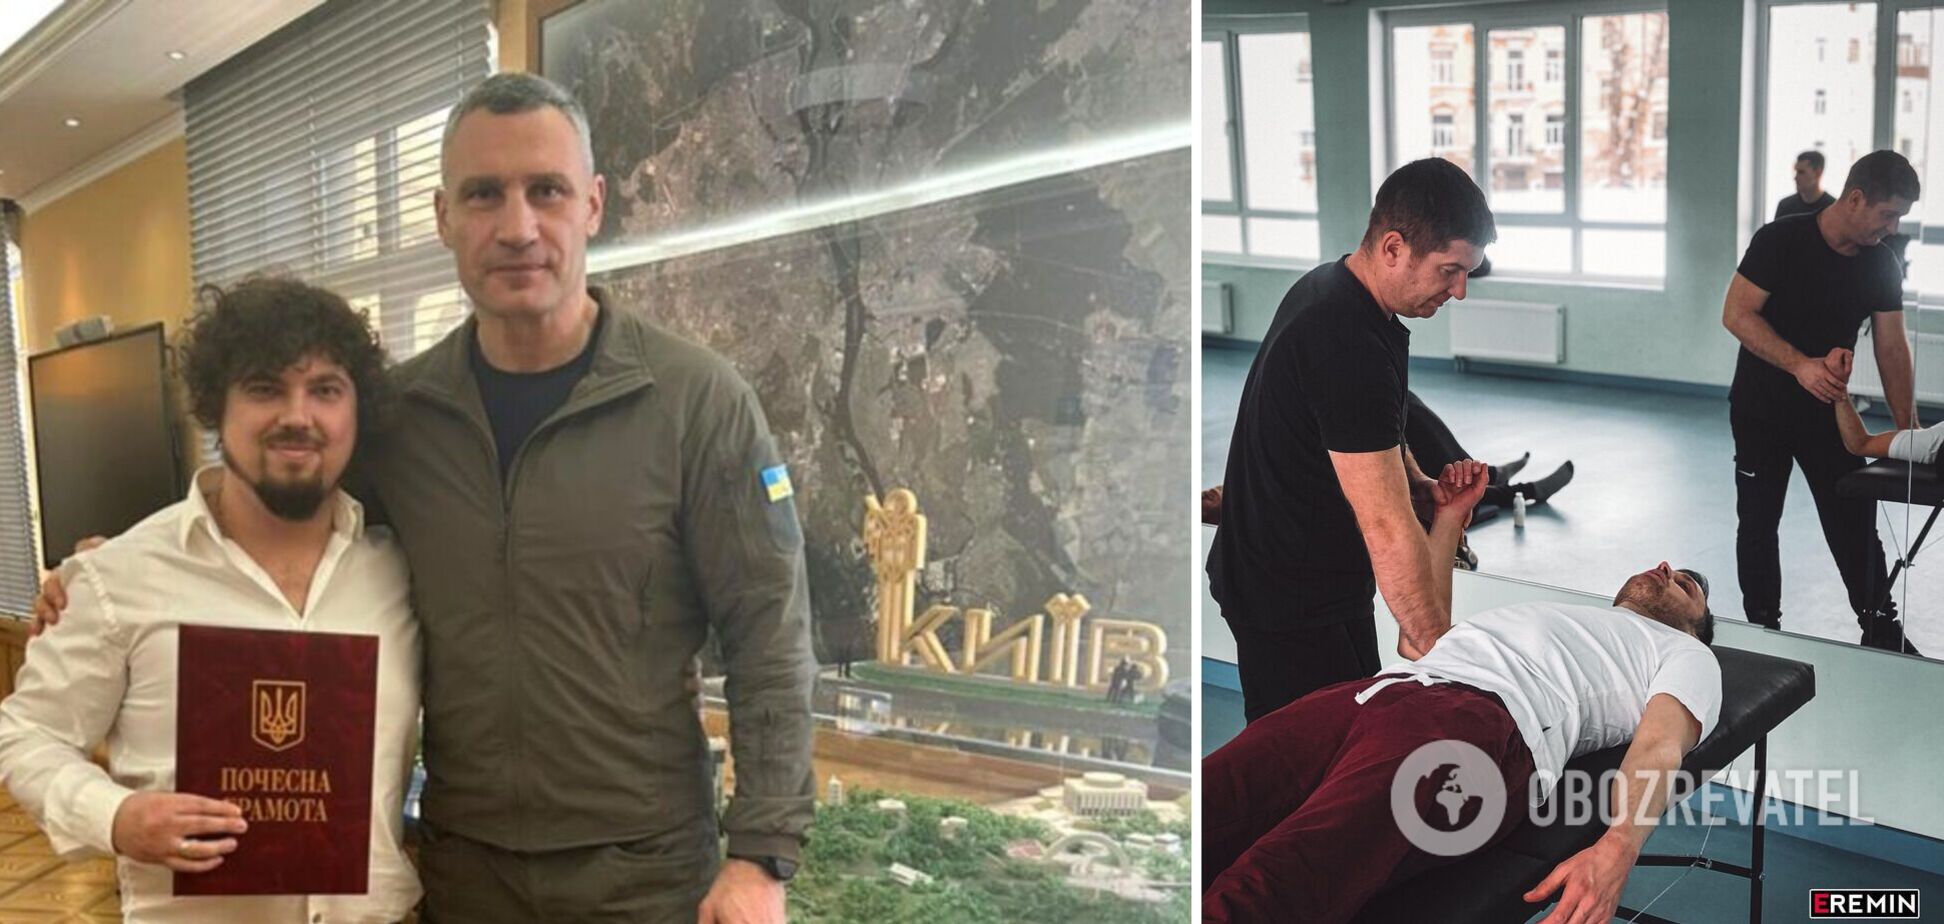 Кличко вручил отличие физиотерапевту Еремину, который на волонтерских началах занимается реабилитацией военных